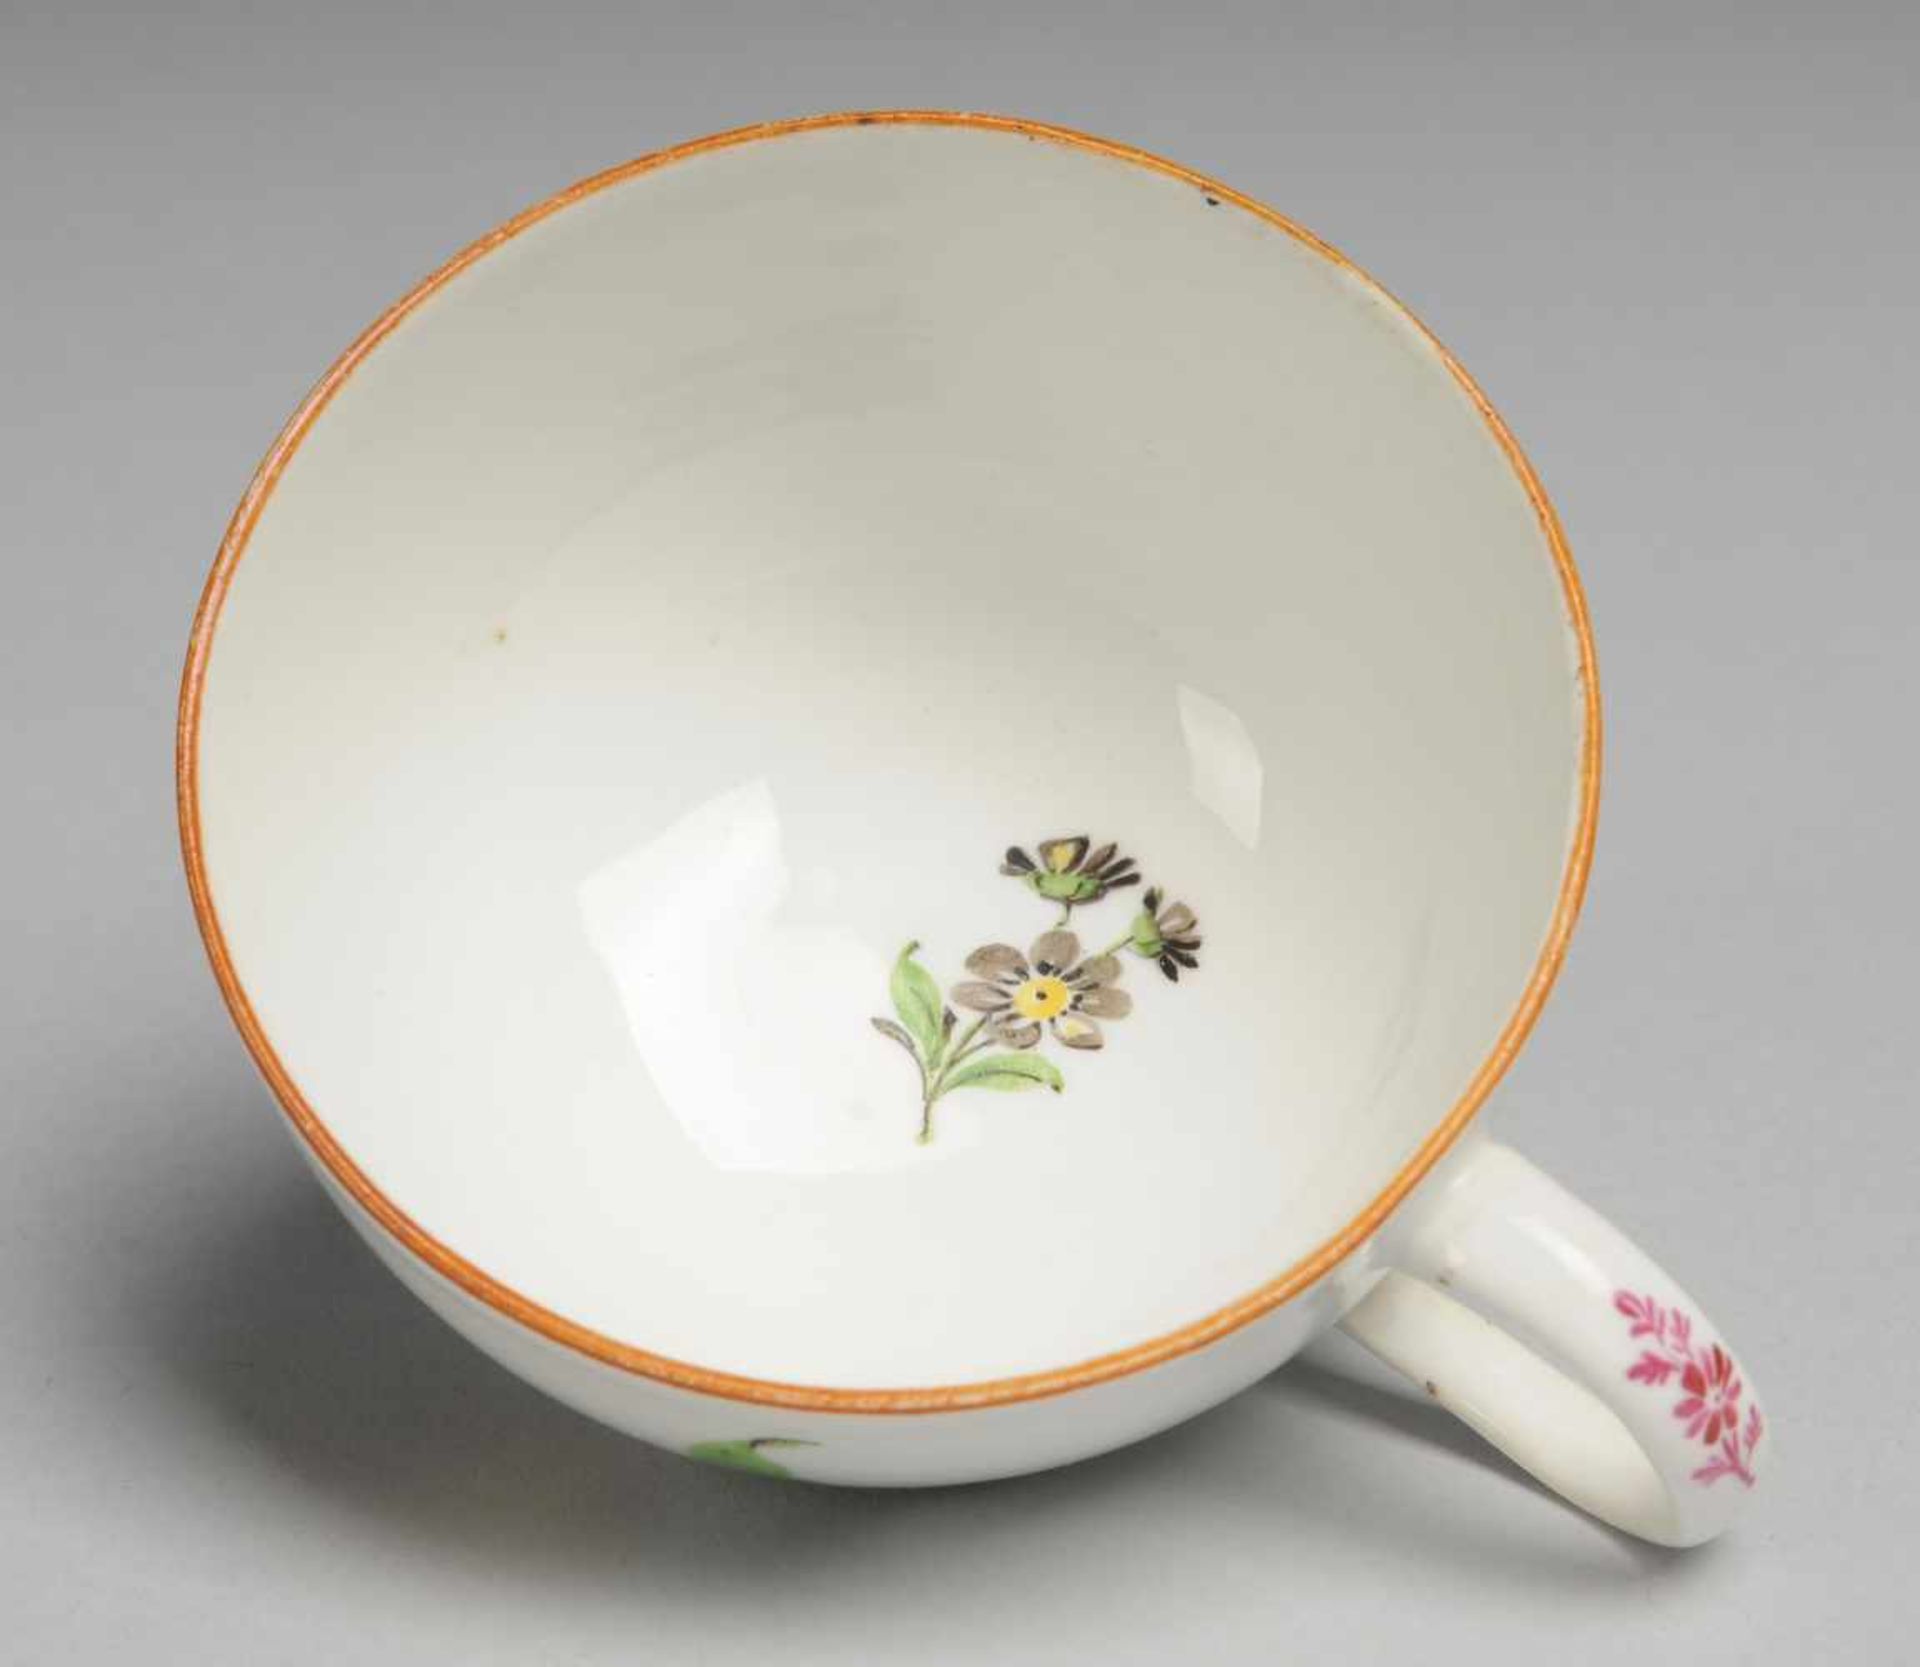 Marcolini-Tasse Weiß, glasiert. Halbkugelige Form. Polychrome Bemalung mit Tulpen u. Streublume. - Bild 2 aus 3